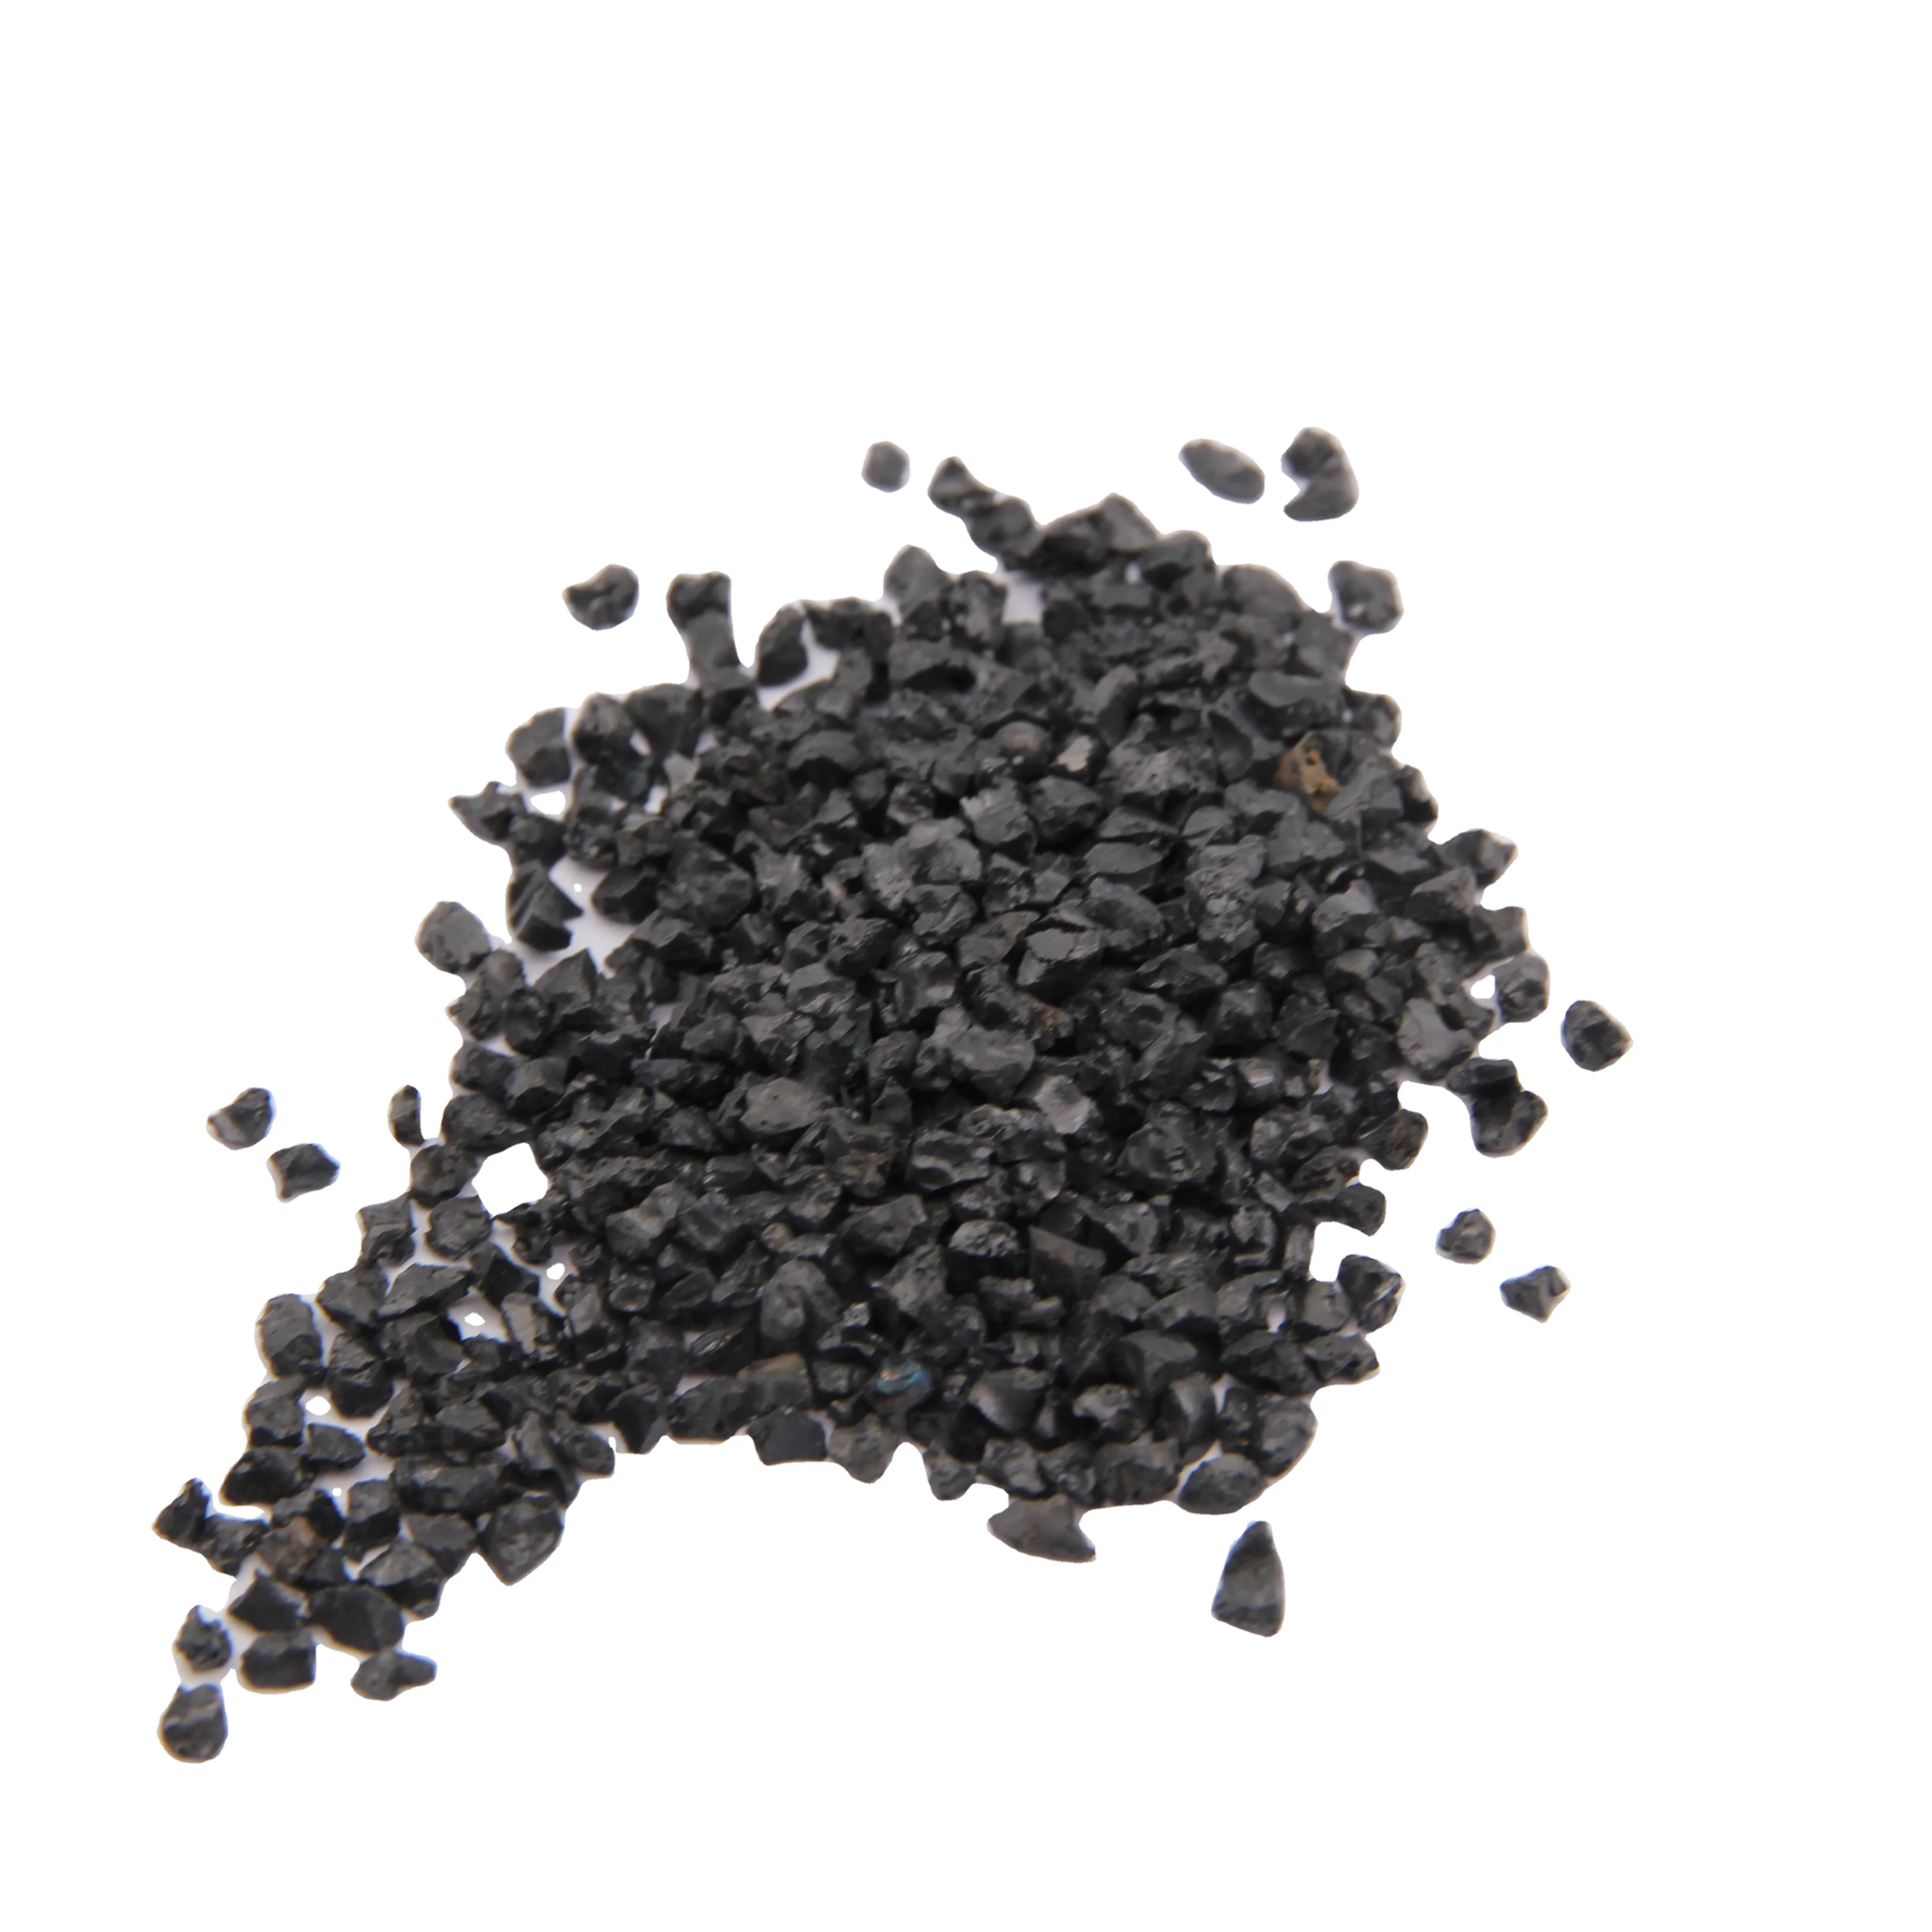 Black Sand/black gravel